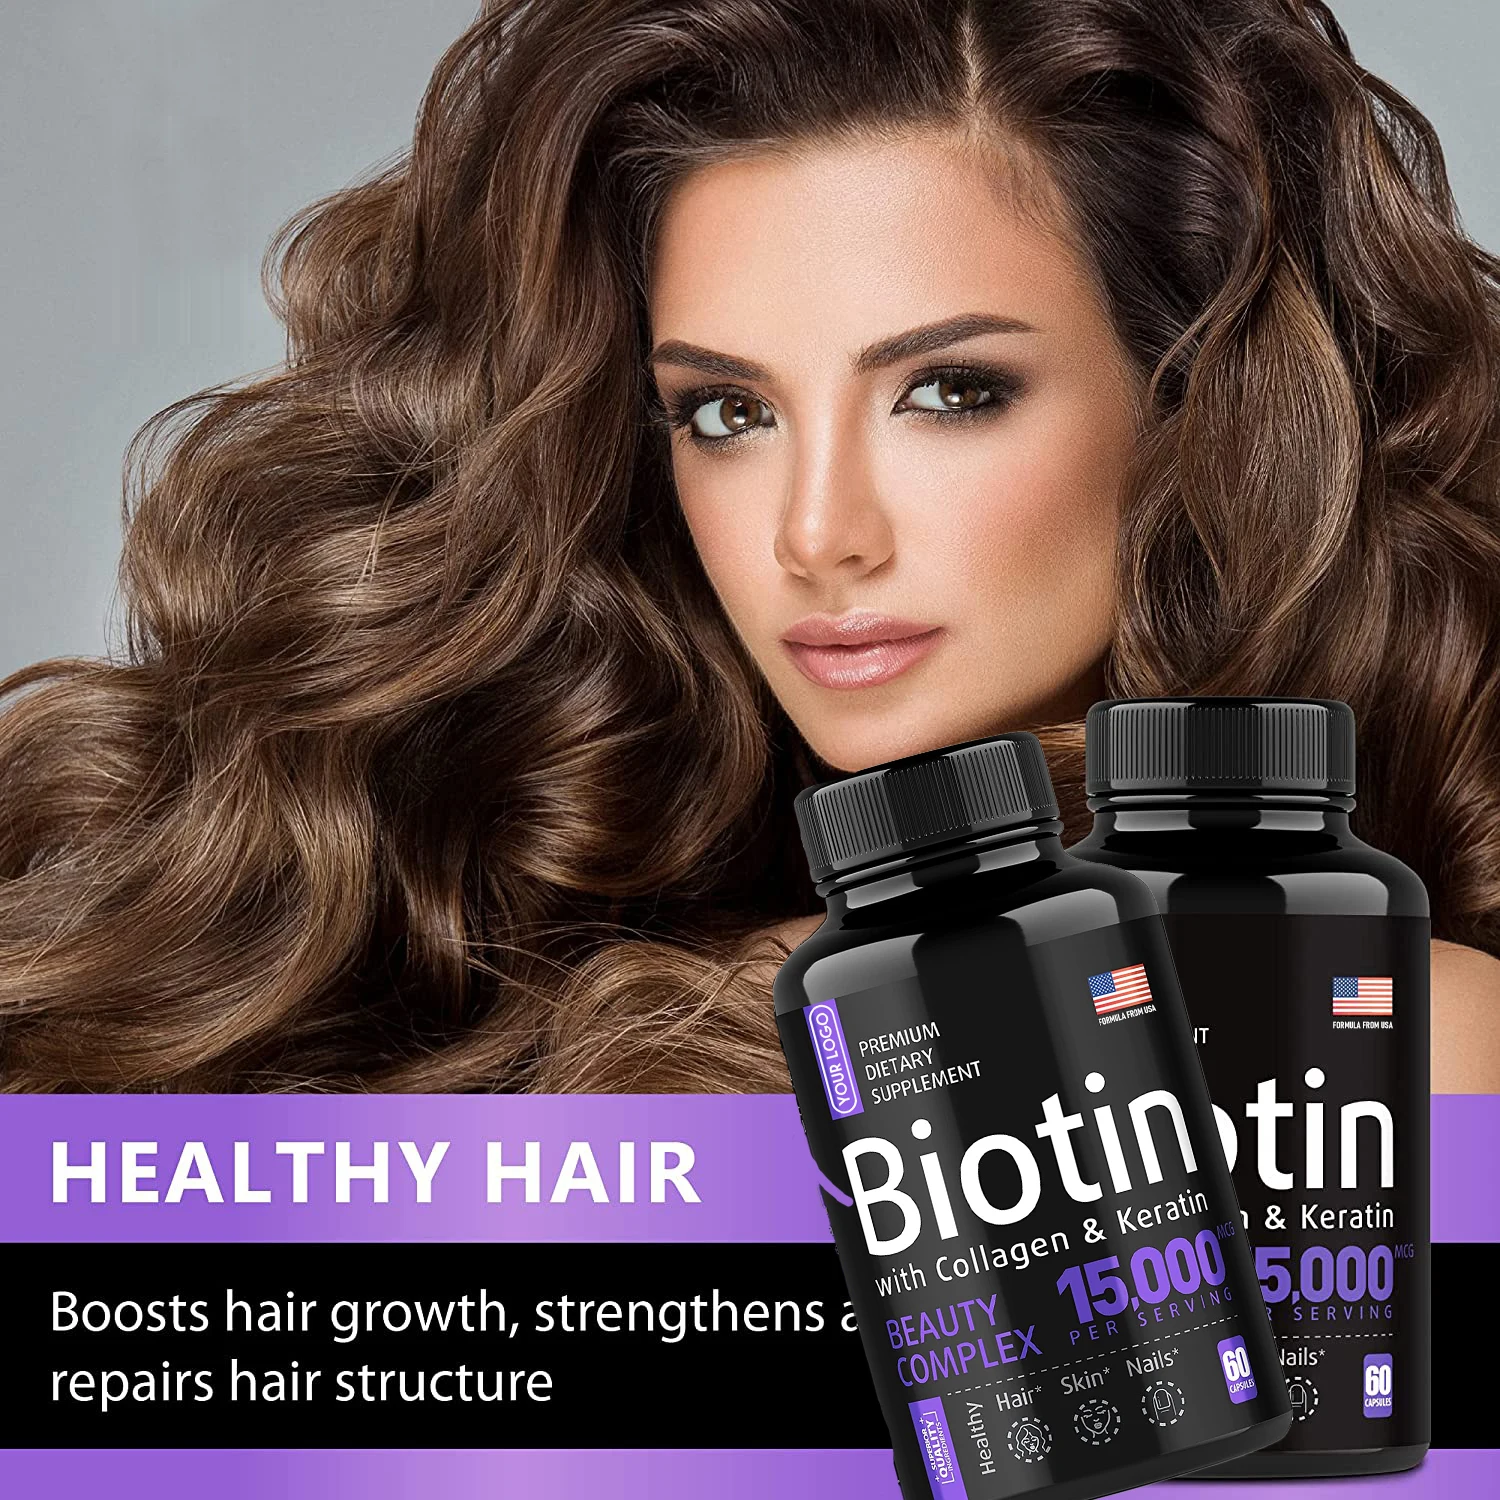 

2 бутылки, биотин в капсулах способствует росту волос, укрепляет ногти, уменьшает разрыв, питает волосы, защищает кожу ногтей